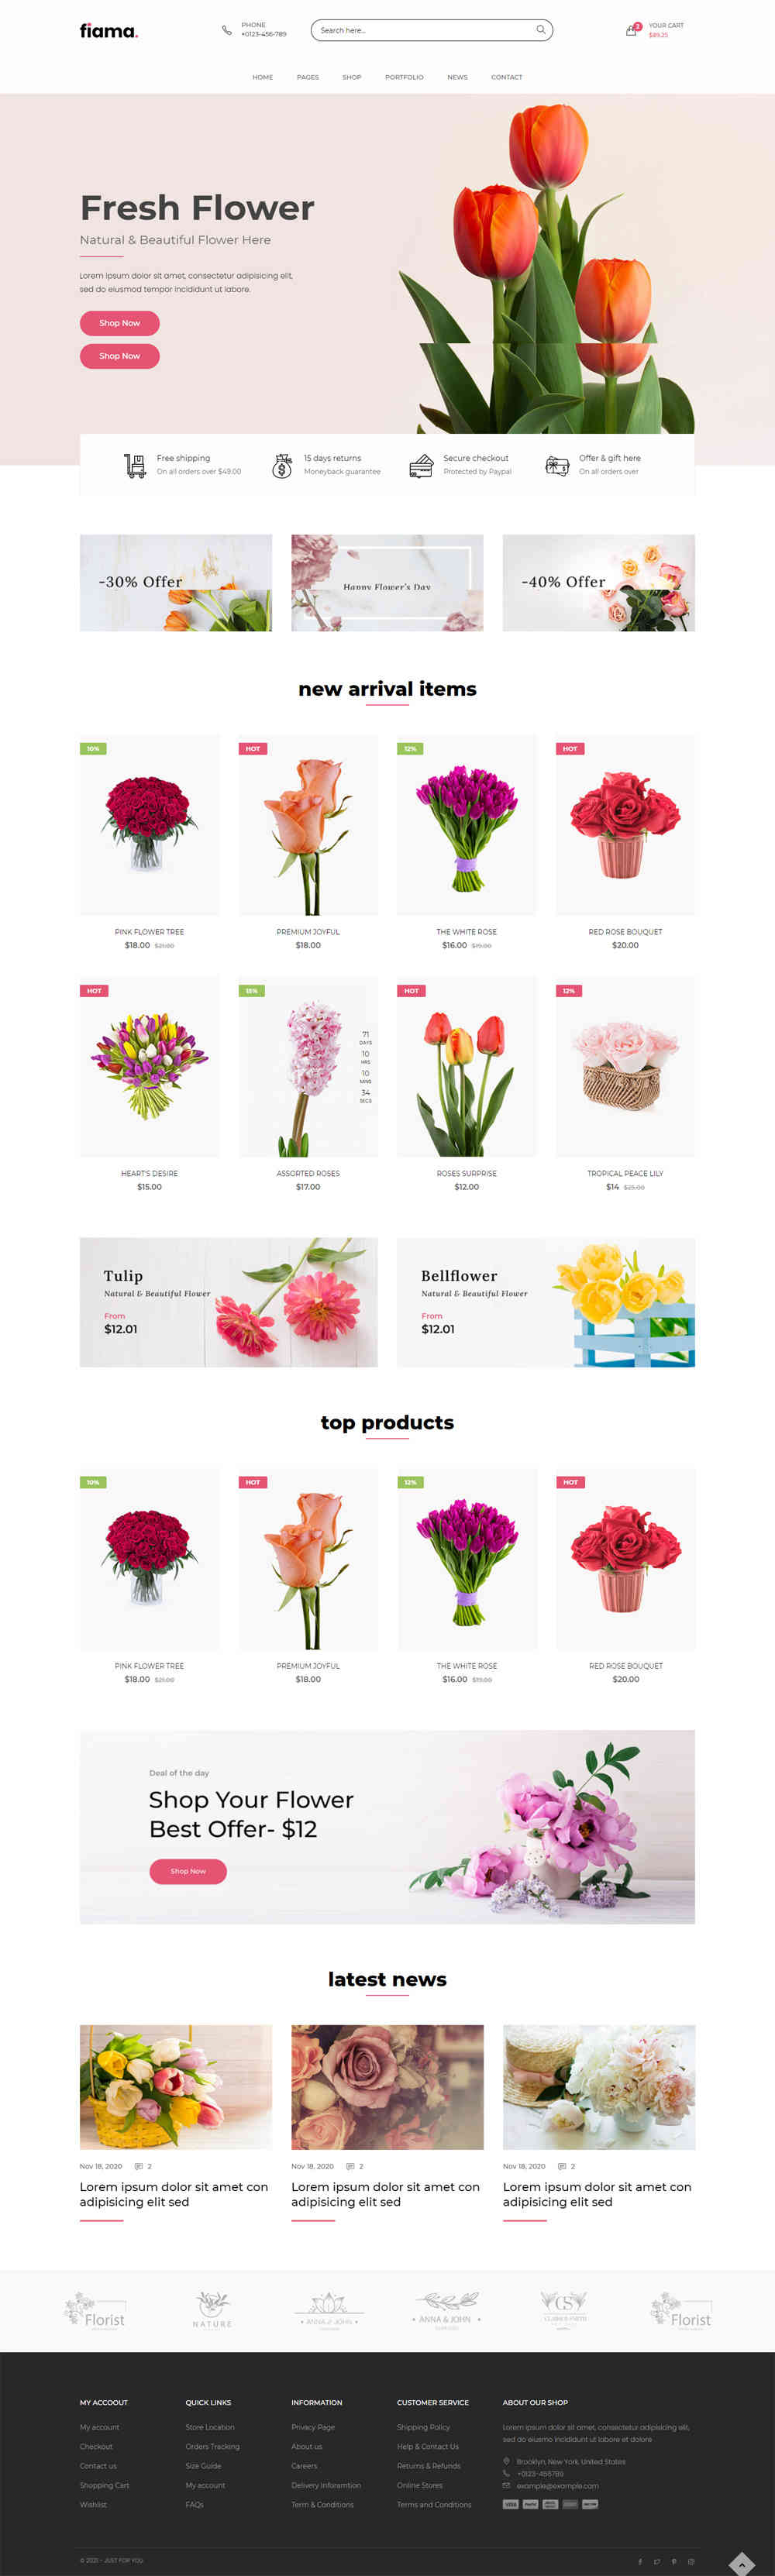 thiet ke website tmi flowershop 10016